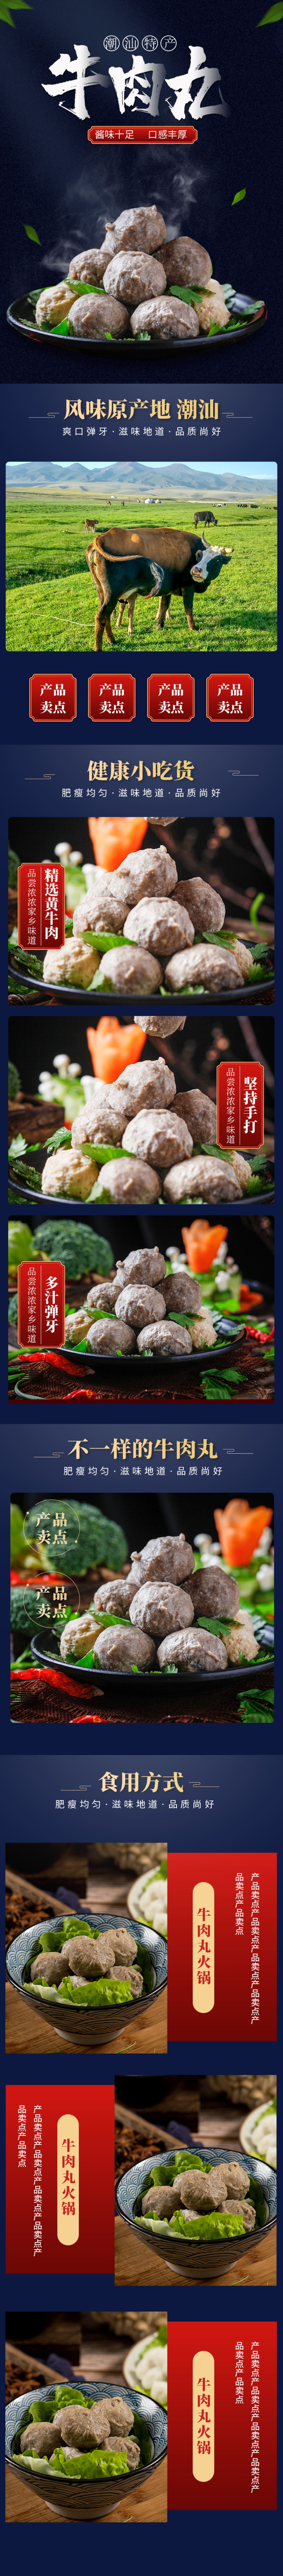 潮汕牛肉丸广告宣传图片